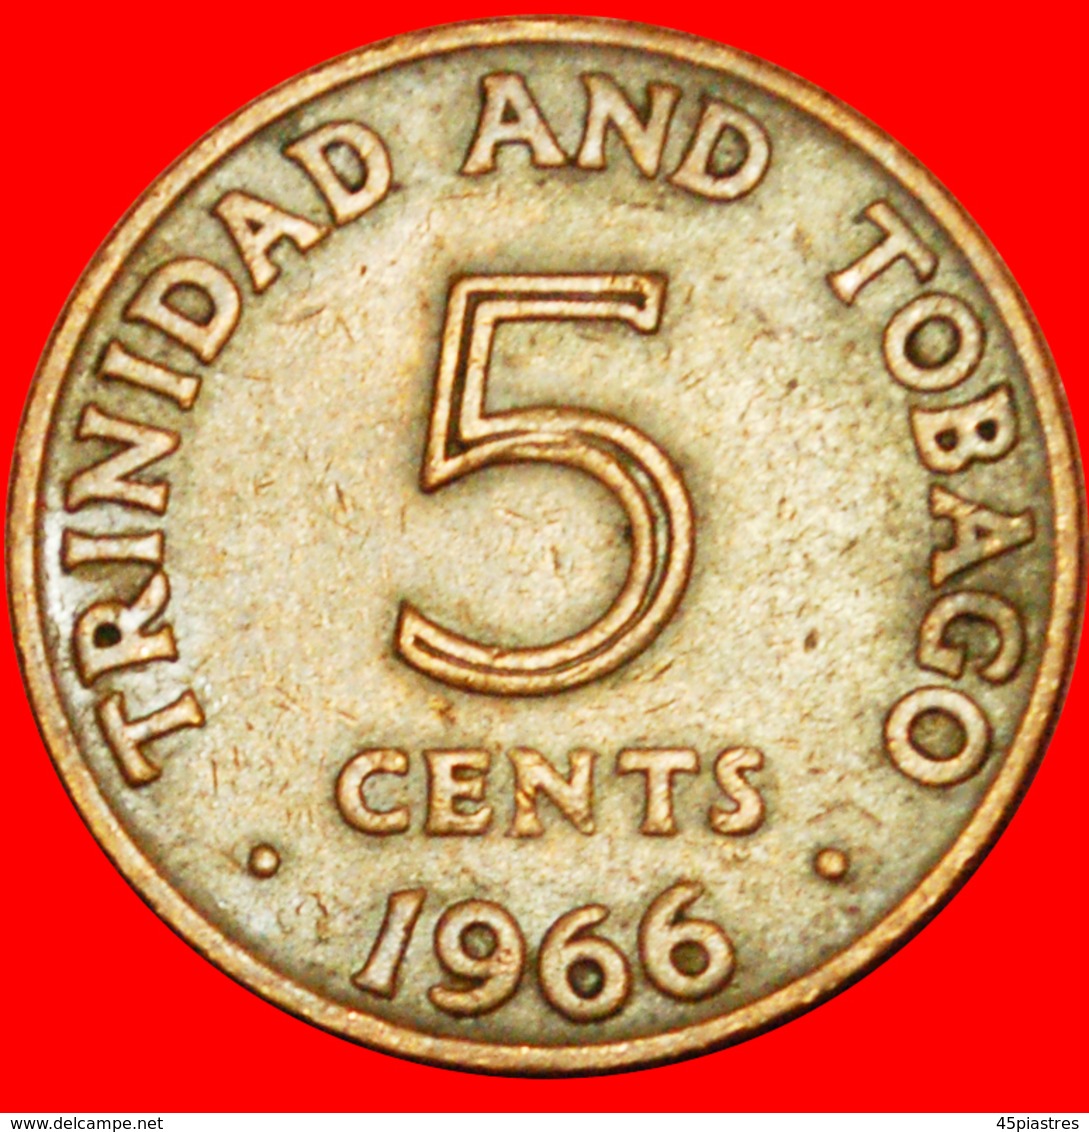 # GREAT BRITAIN (1966-1972): TRINIDAD AND TOBAGO ★ 5 CENTS 1966! LOW START ★ NO RESERVE! - Trinidad & Tobago